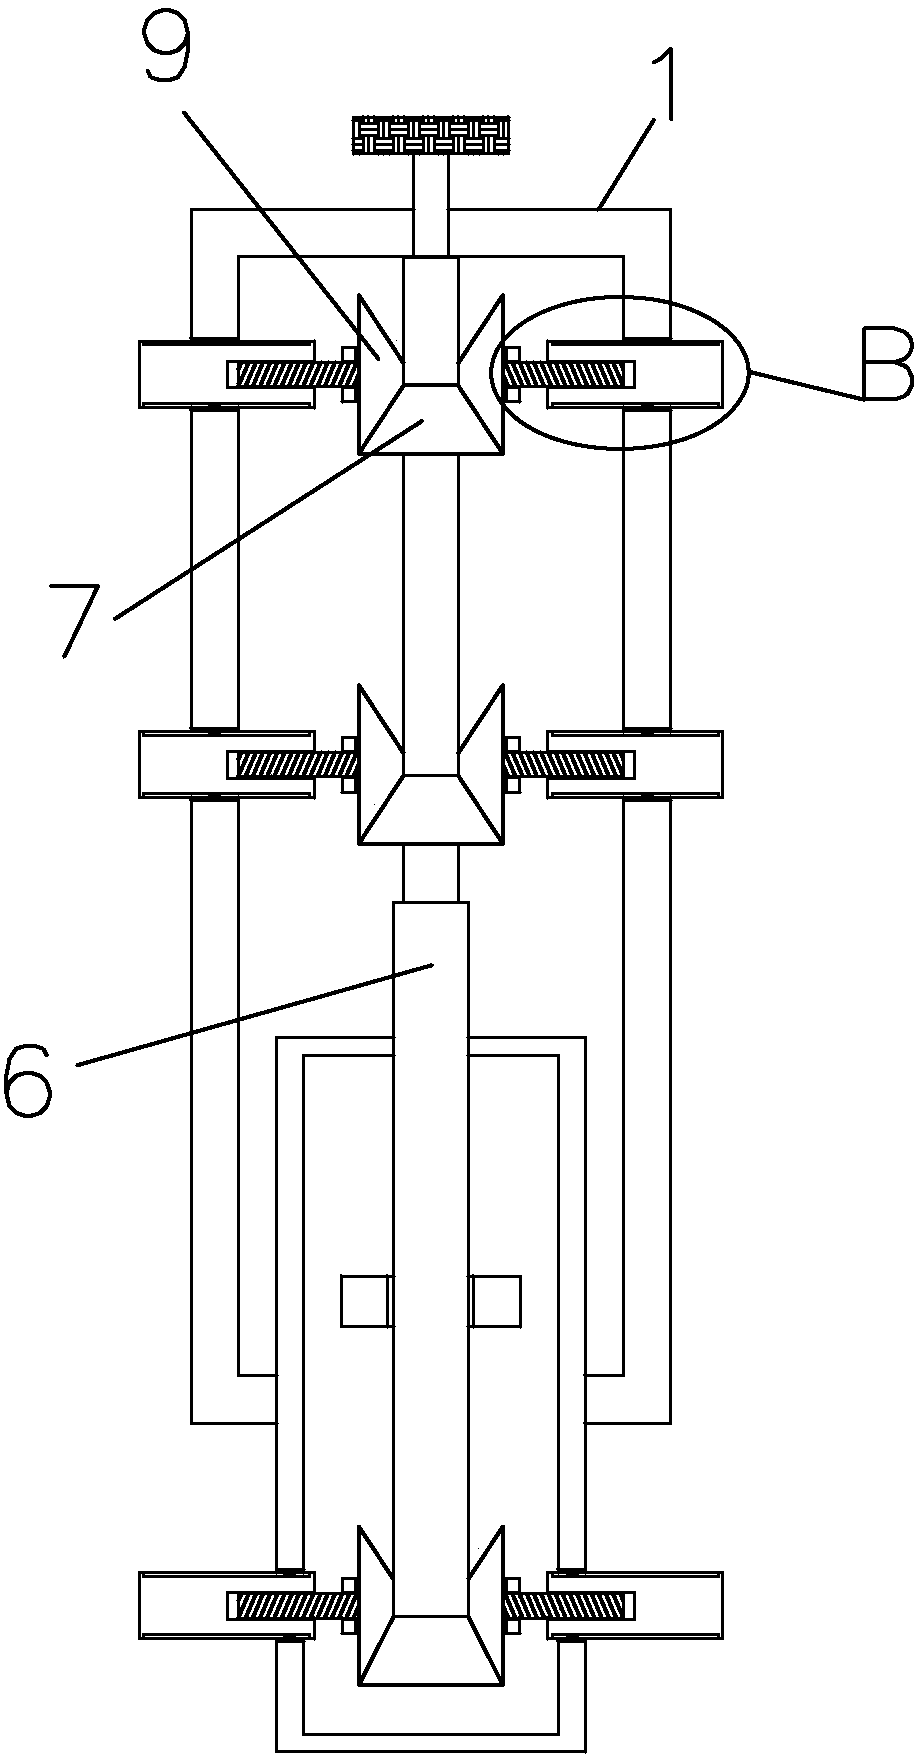 Radian detection fixture of automobile door panel